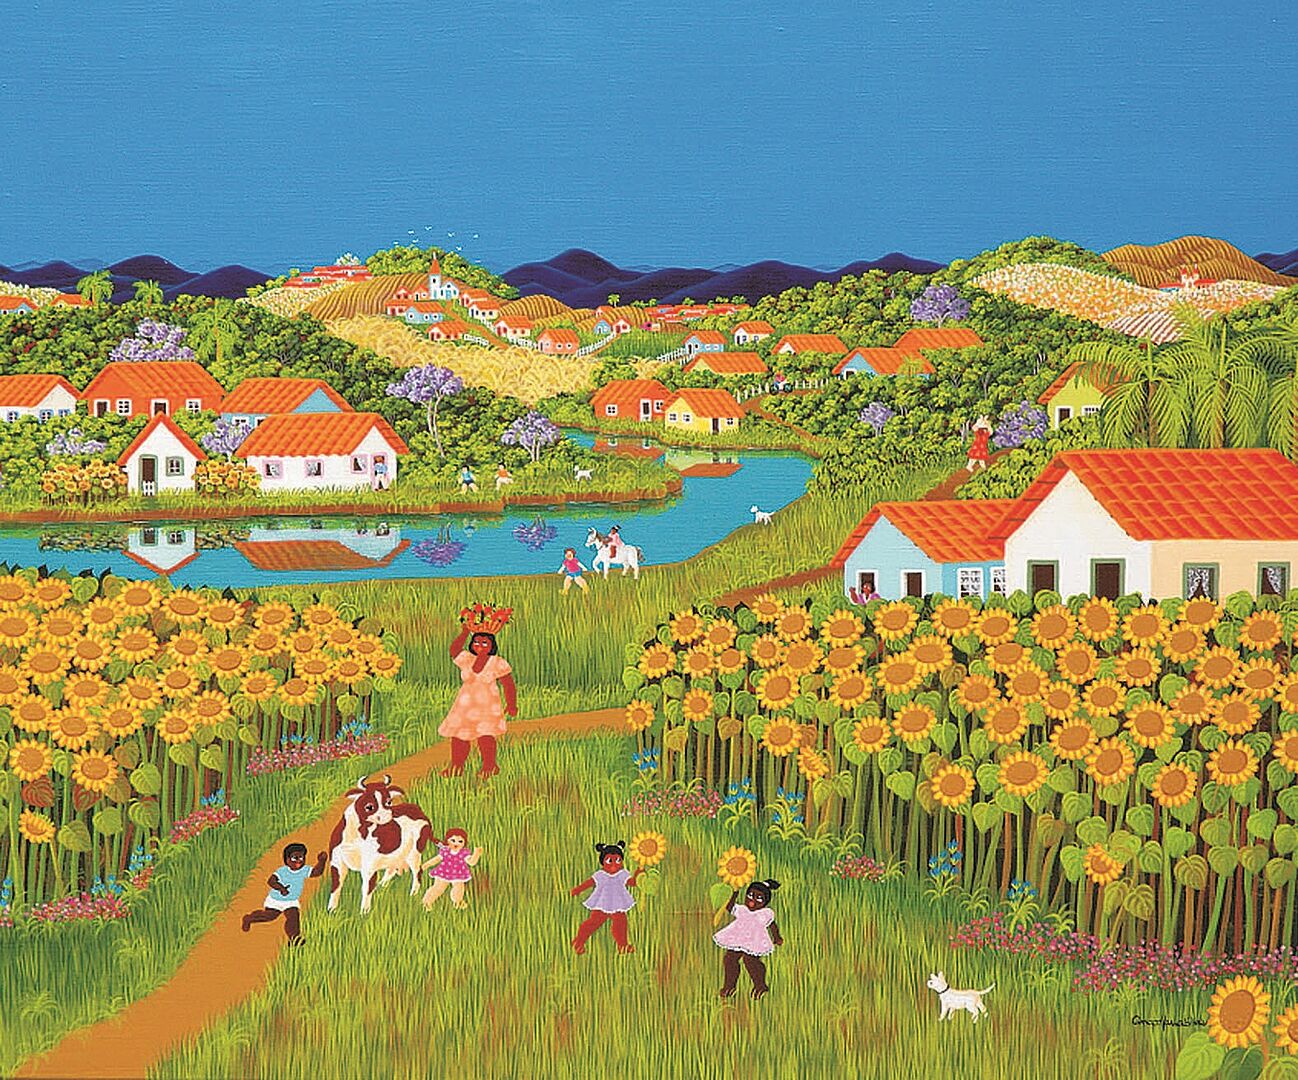 naive Malerei einer Landschaft mit Sonnenblumenfeldern, Häusern mit roten Zeigeldächern, einem Fluß der in einer Biegung durch die Wiesen zwischen den Häusern fließt, im Vordergrund spielende Kinder.  